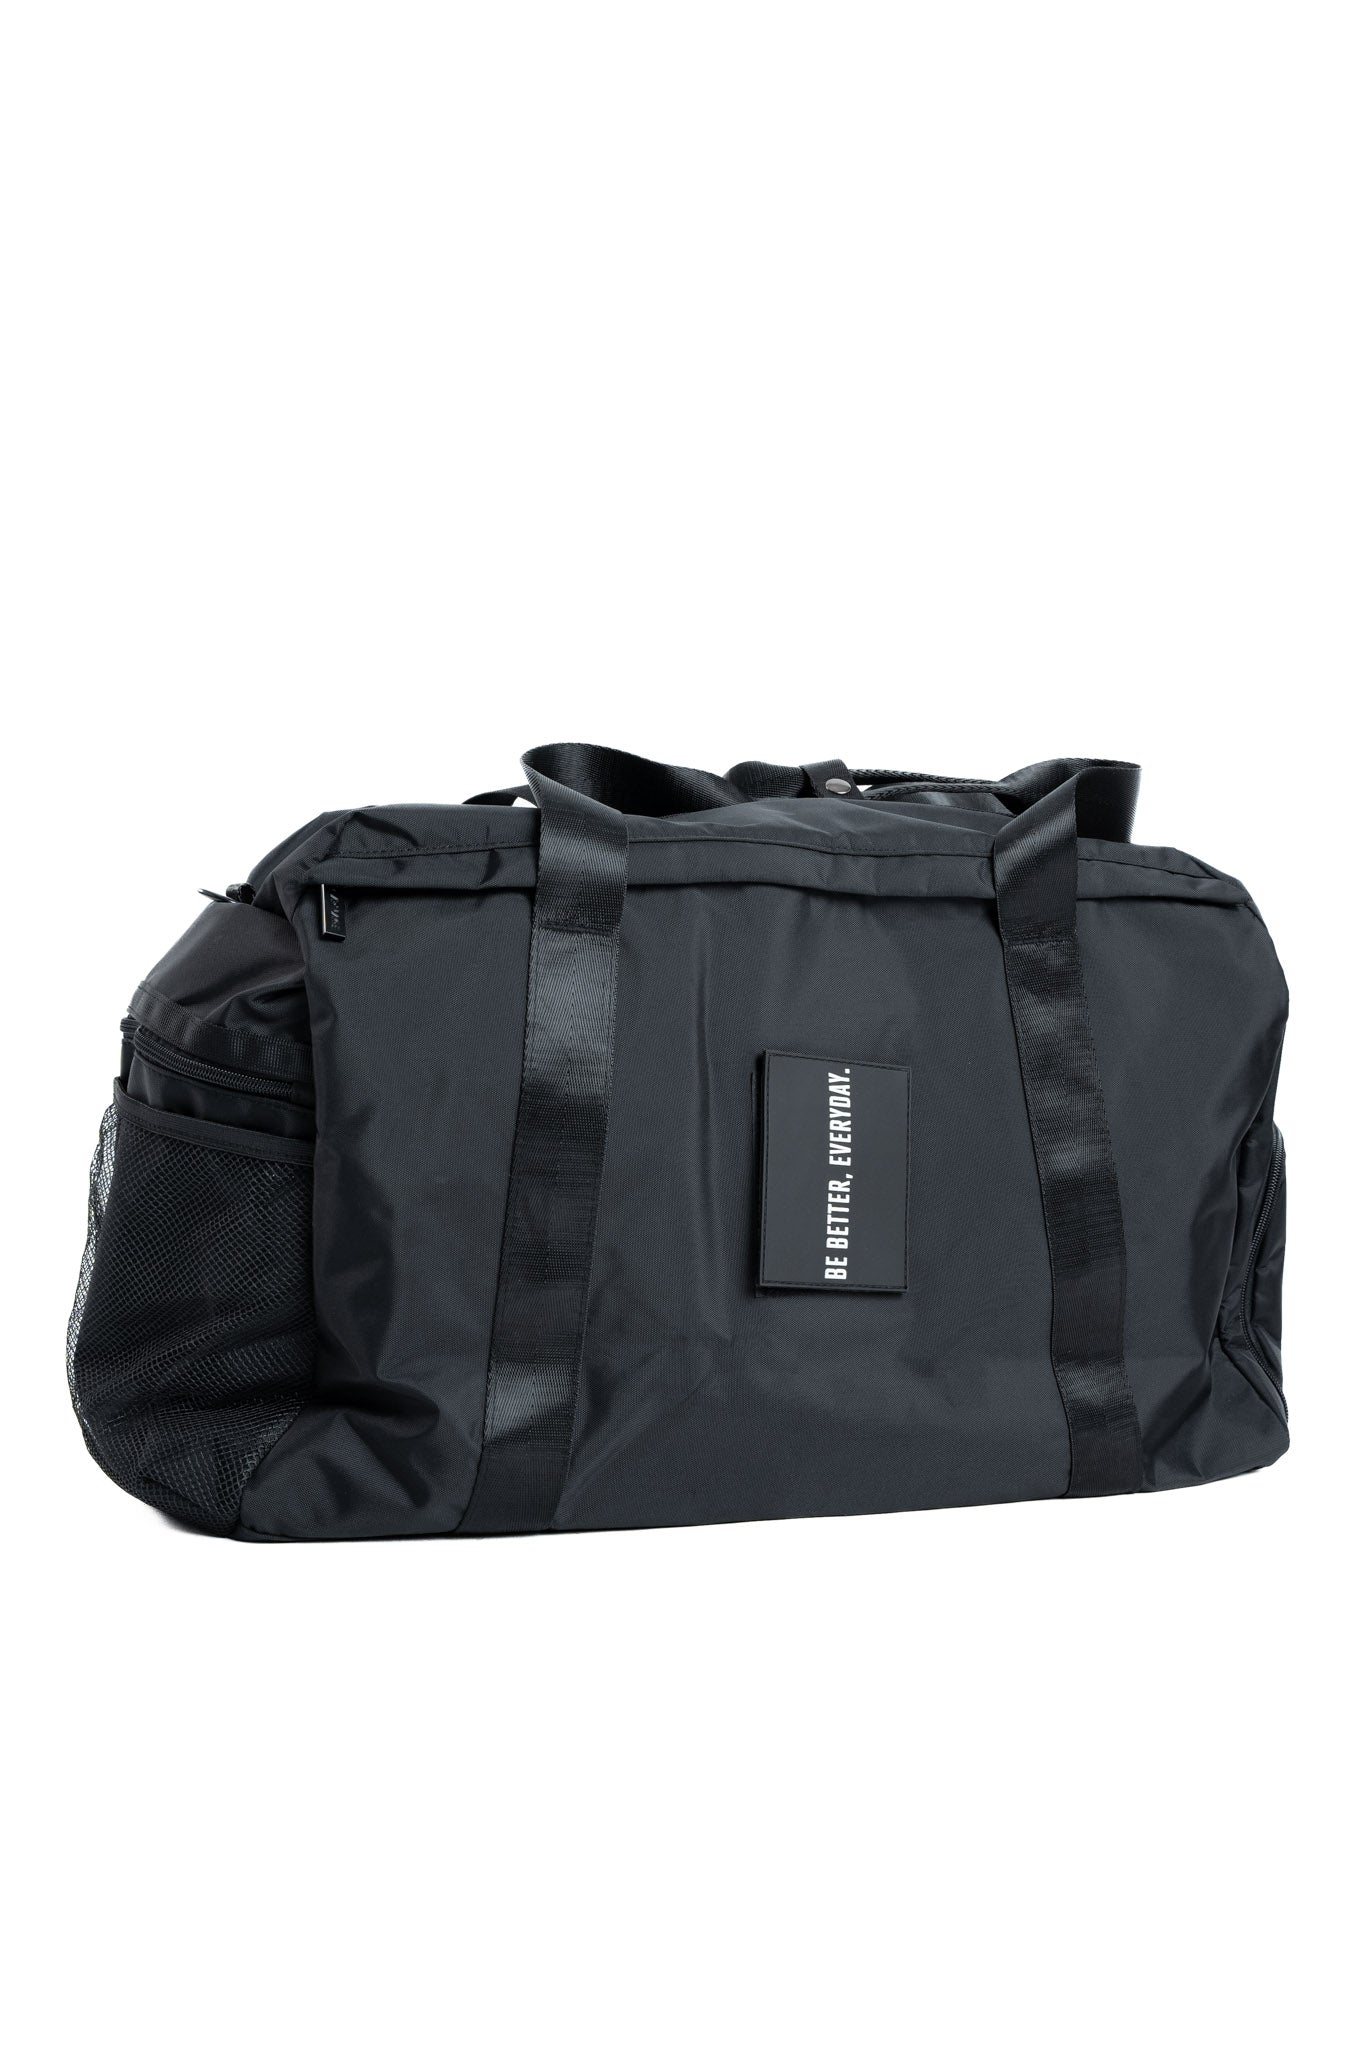 Essential Duffel Bag